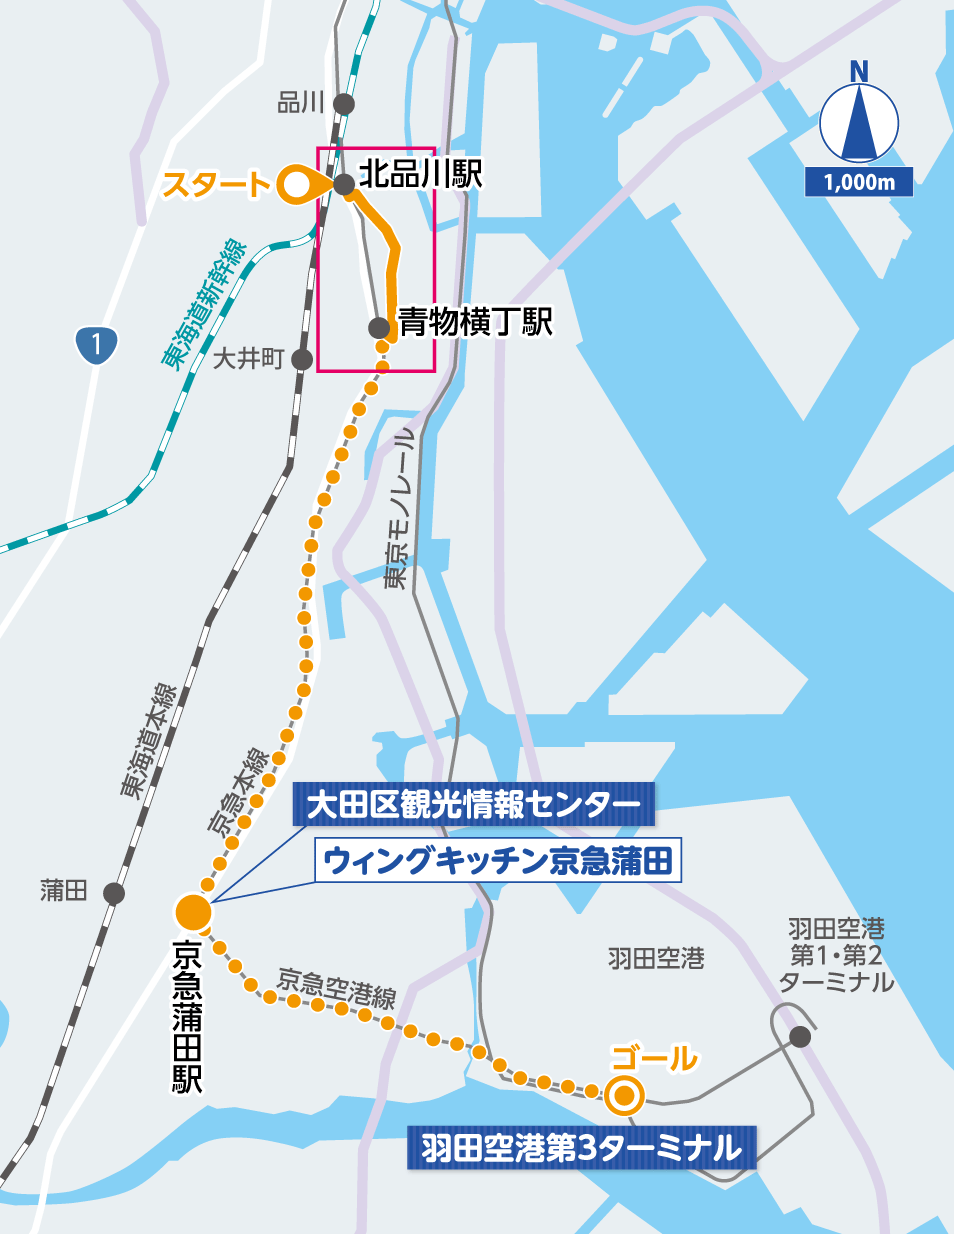 品川・羽田 詳細マップ2